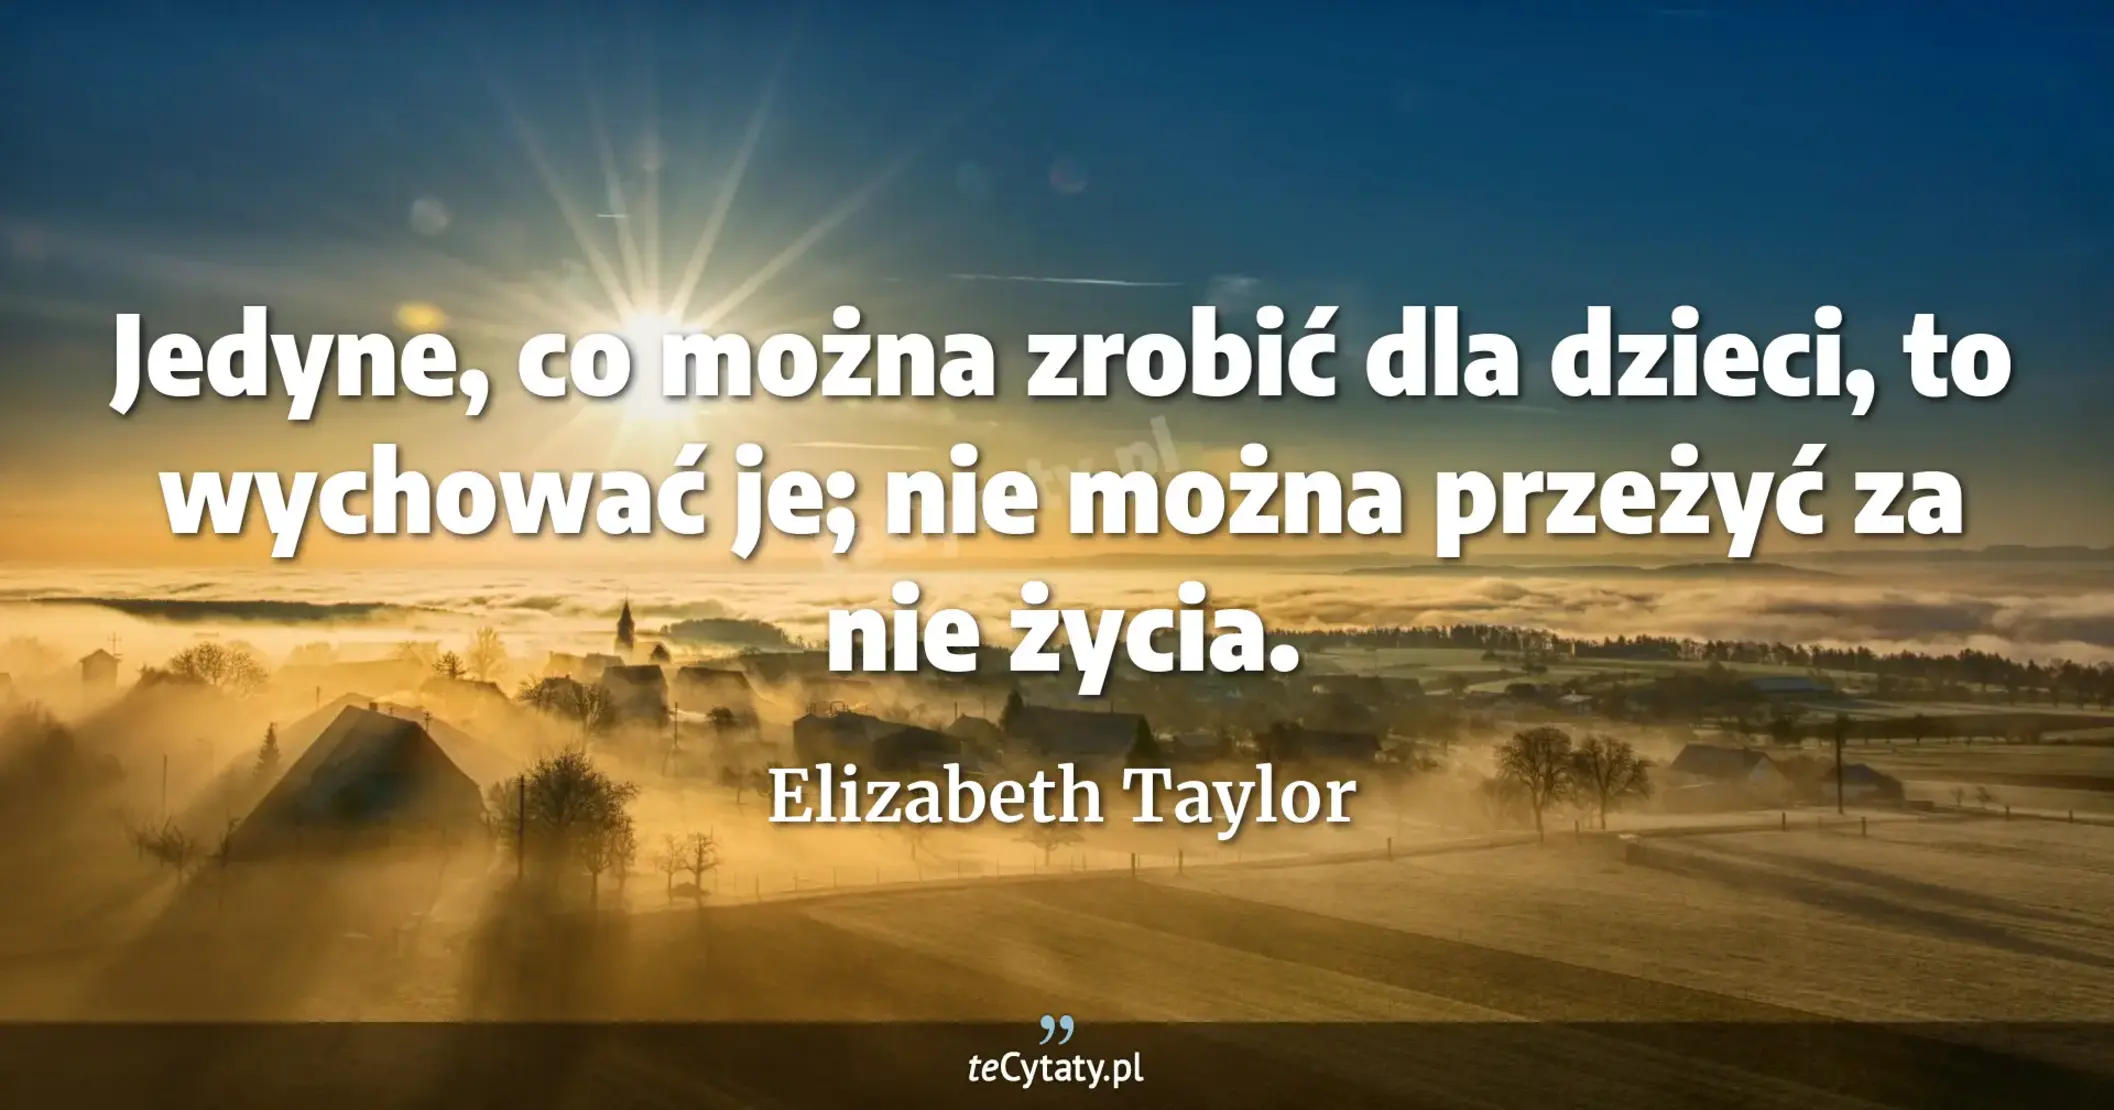 Jedyne, co można zrobić dla dzieci, to wychować je; nie można przeżyć za nie życia. - Elizabeth Taylor